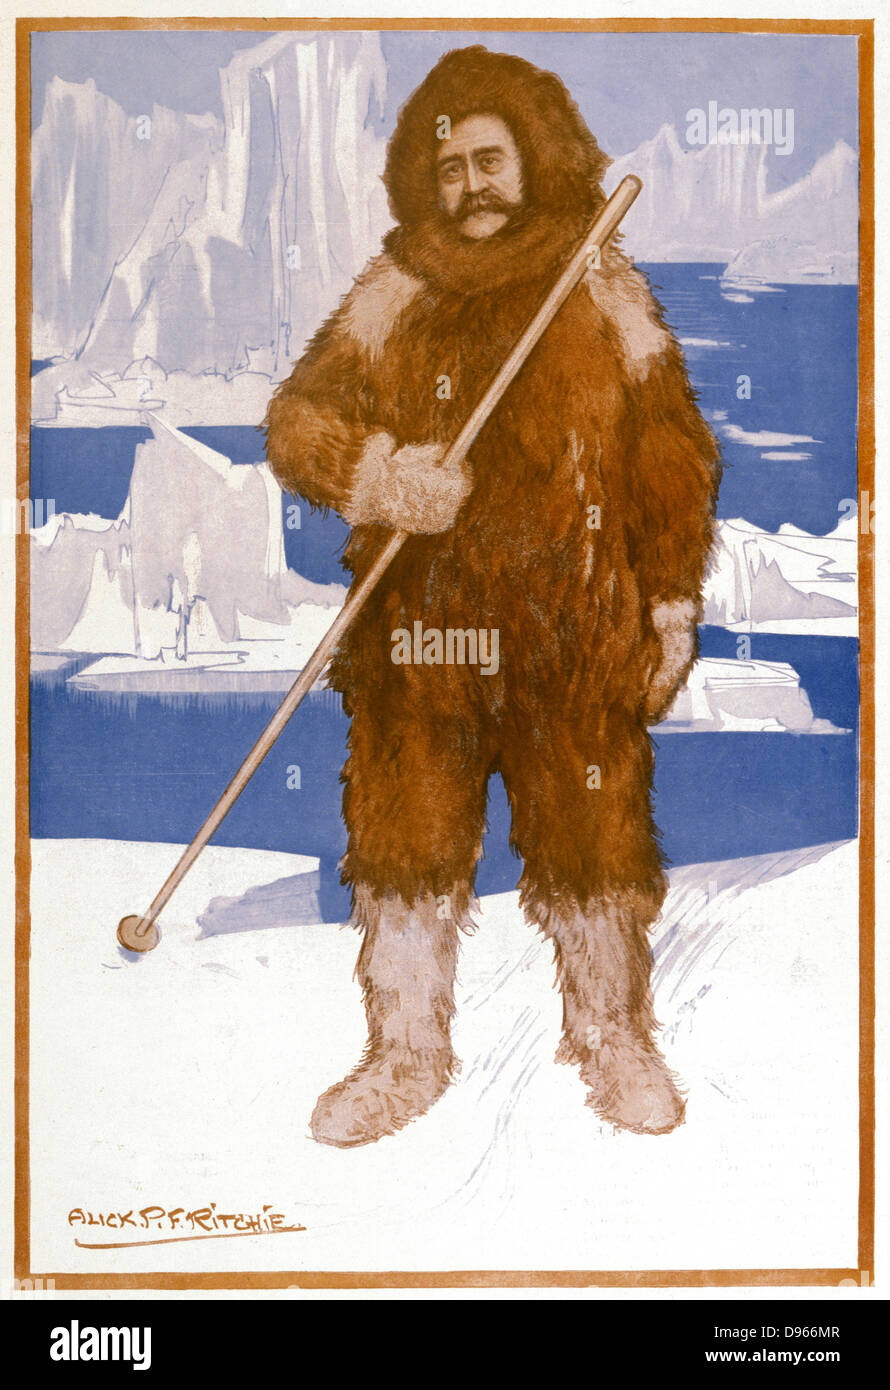 Robert Edwin Peary (1856-1920) officier de marine et explorateur Américain, généralement reconnu comme chef du succès de la première expédition au pôle Nord (1909). Caricature publiée à Londres, 1909. Banque D'Images